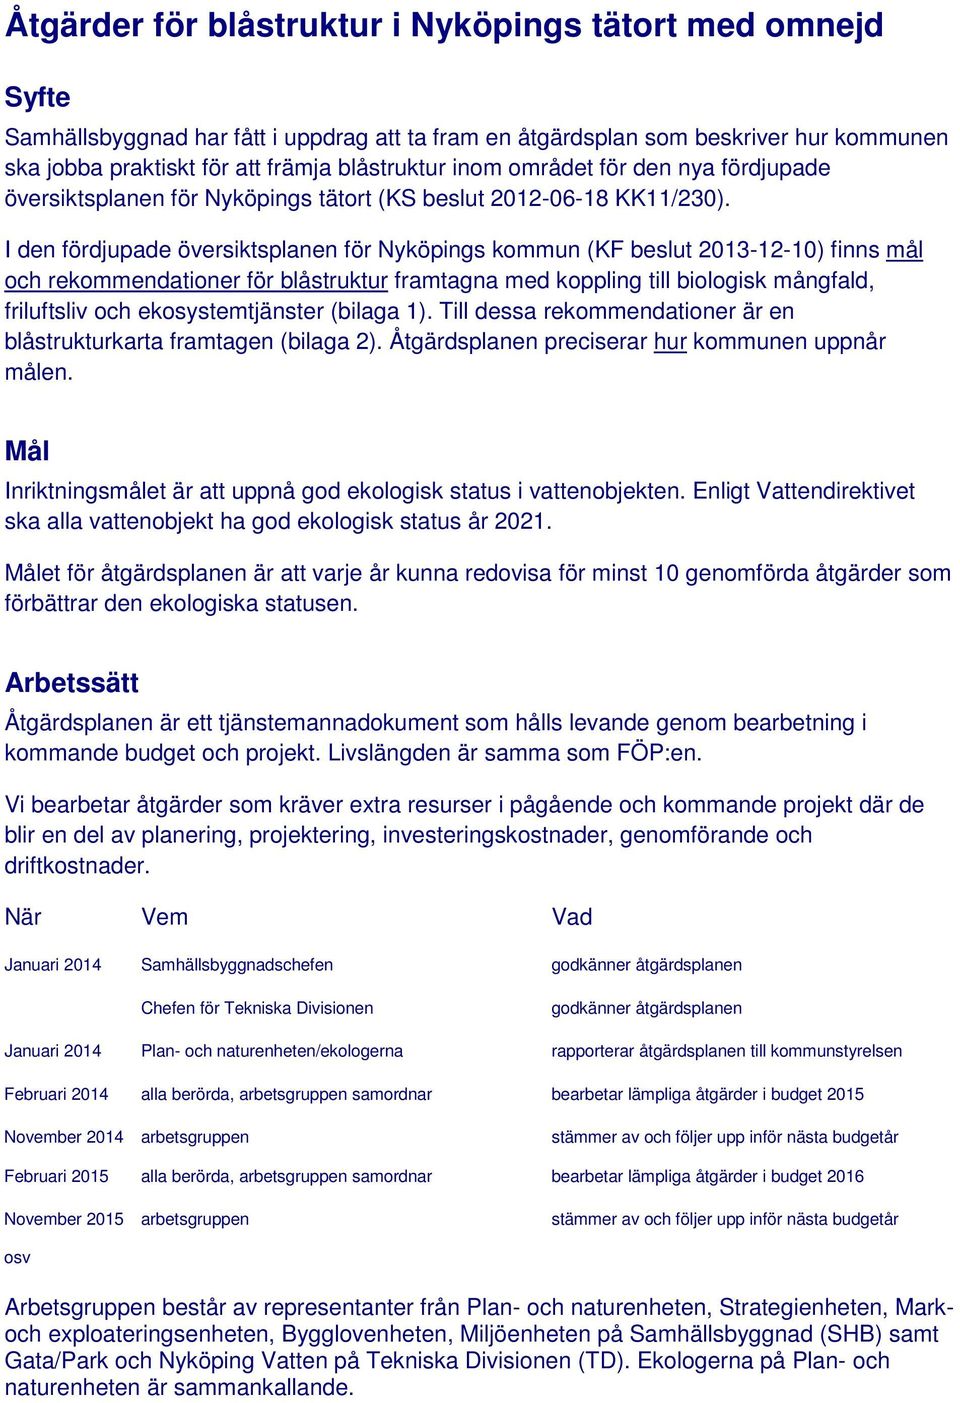 I den fördjupade översiktsplanen för Nyköpings kommun (KF beslut 2013-12-10) finns mål och rekommendationer för blåstruktur framtagna med koppling till biologisk mångfald, friluftsliv och